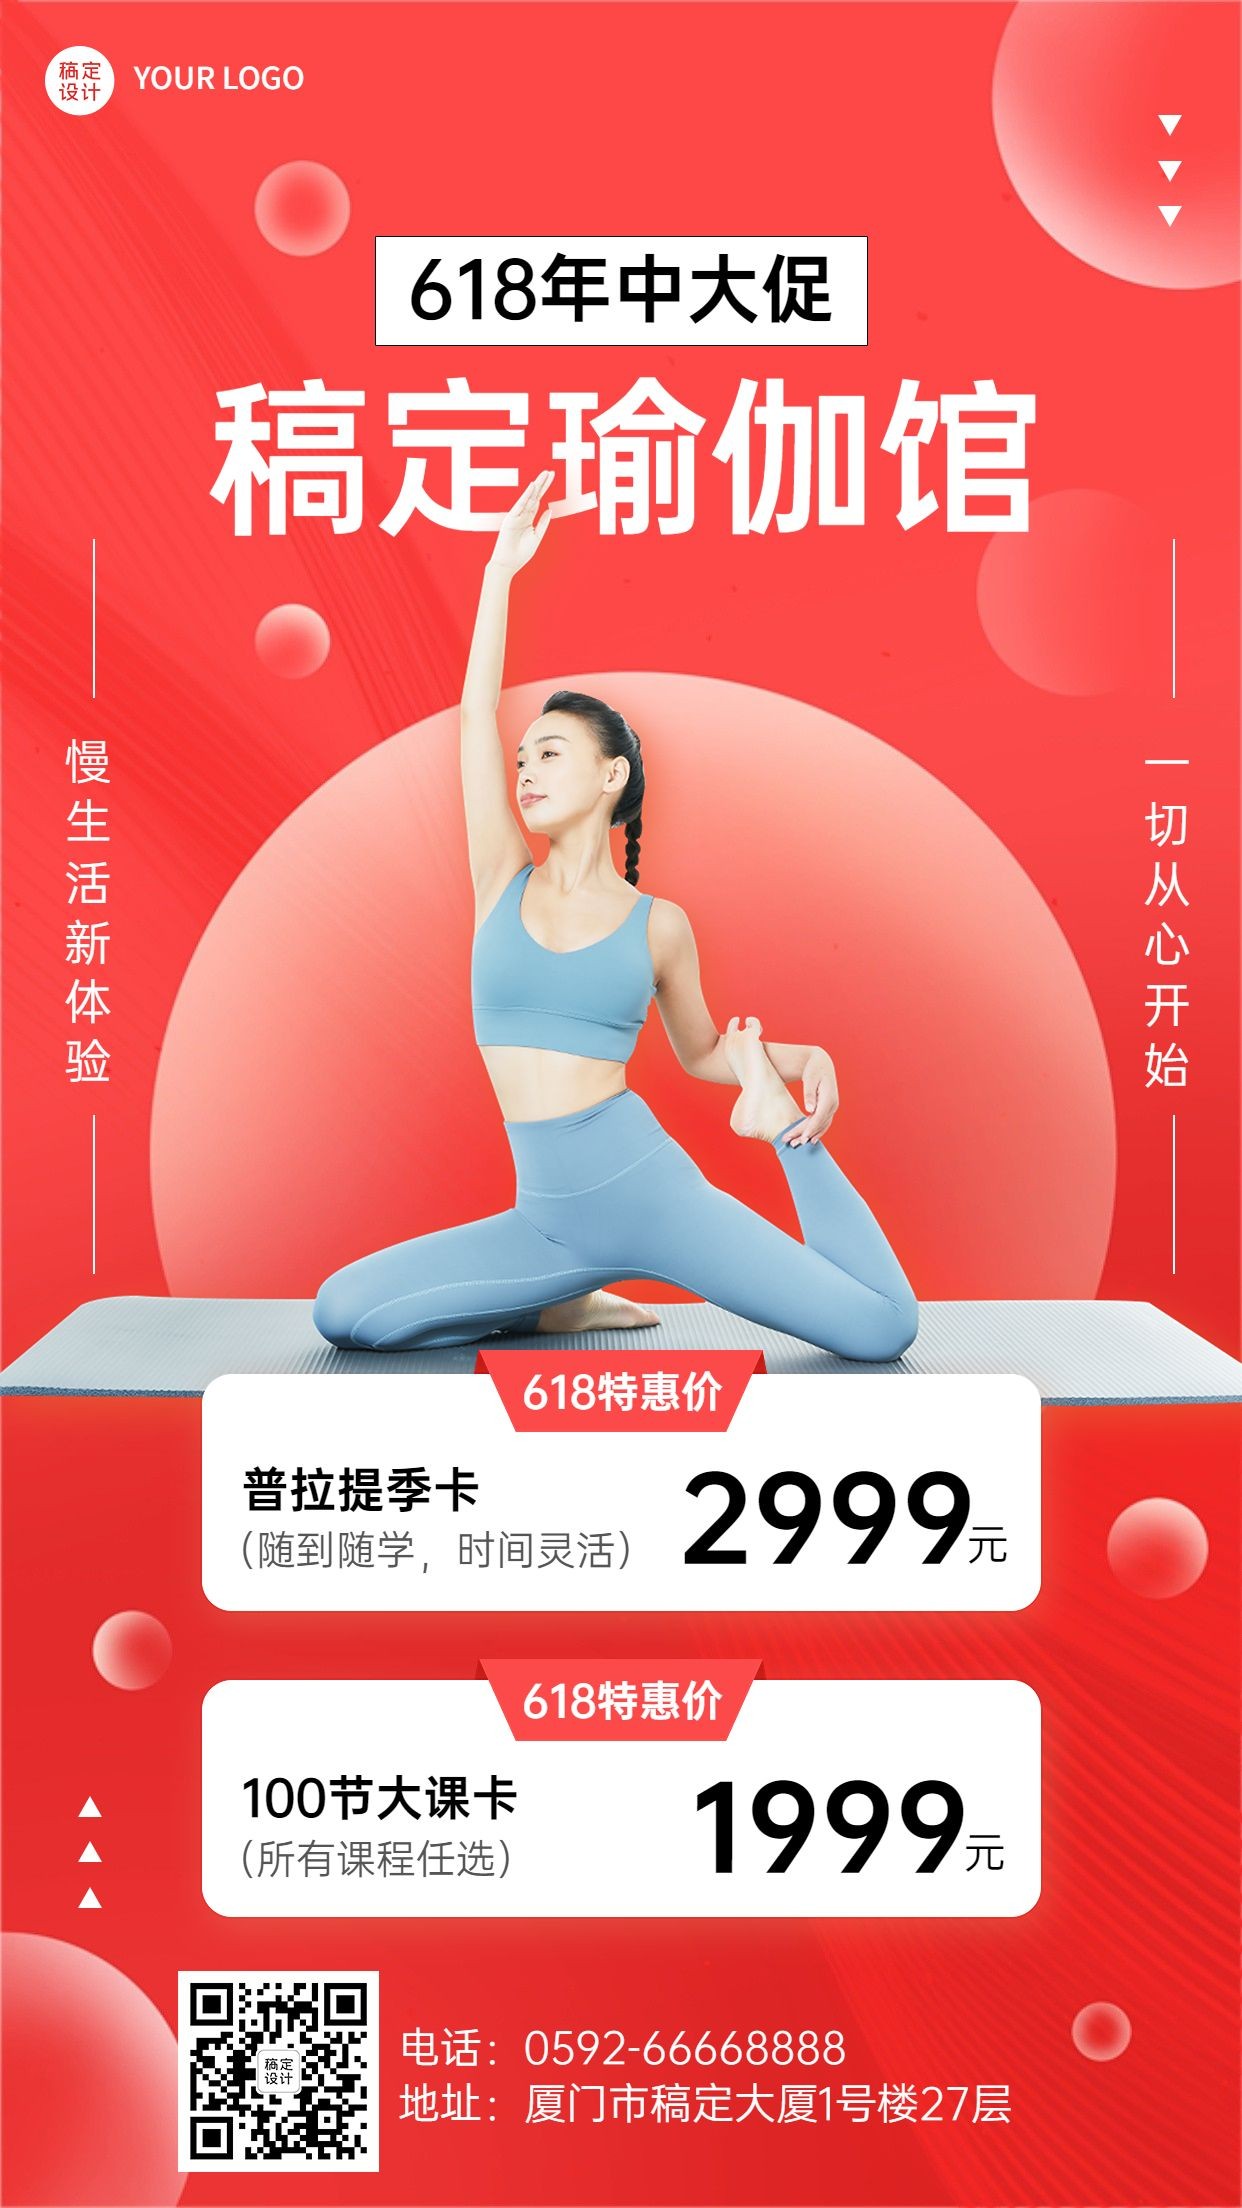 618年中大促运动健身瑜伽优惠活动营销手机海报预览效果